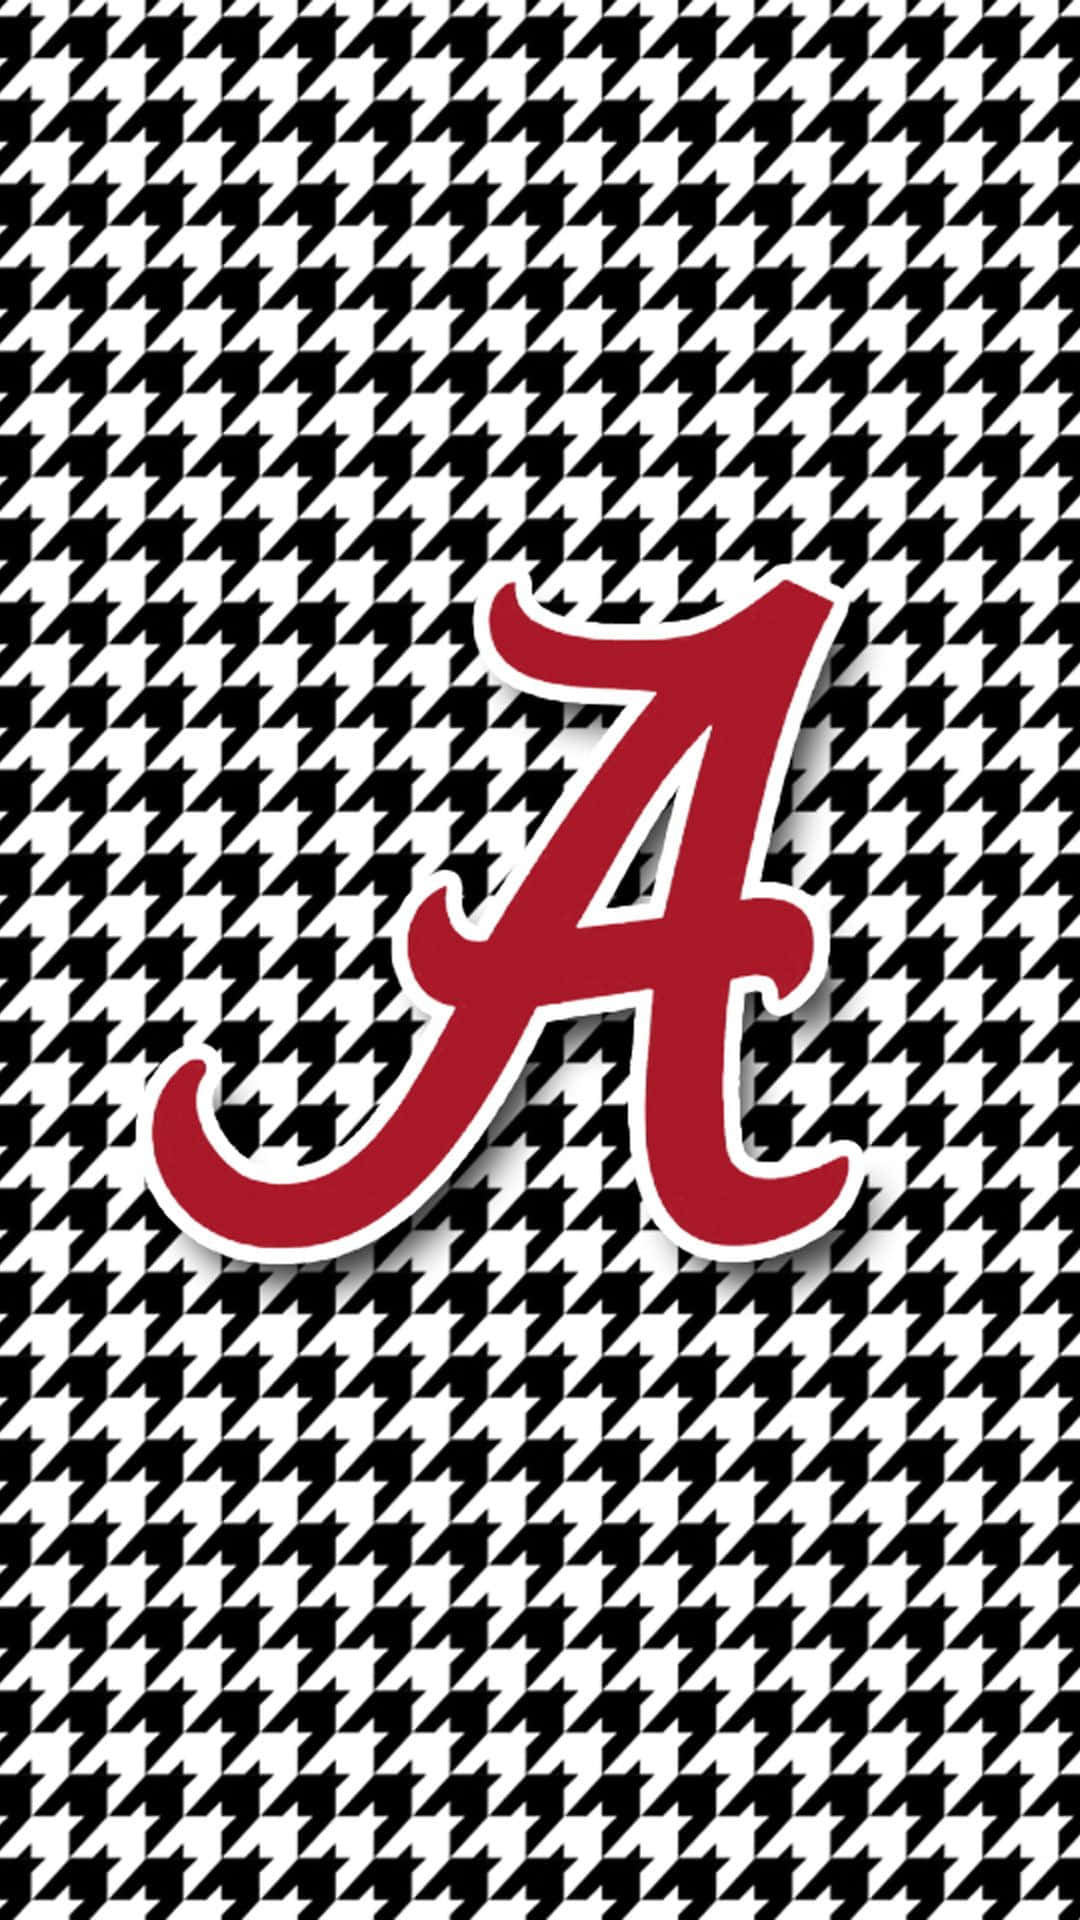 Gør dig klar til at vise din Crimson Tide-støtte med en Alabama Football Iphone Wallpaper! Wallpaper